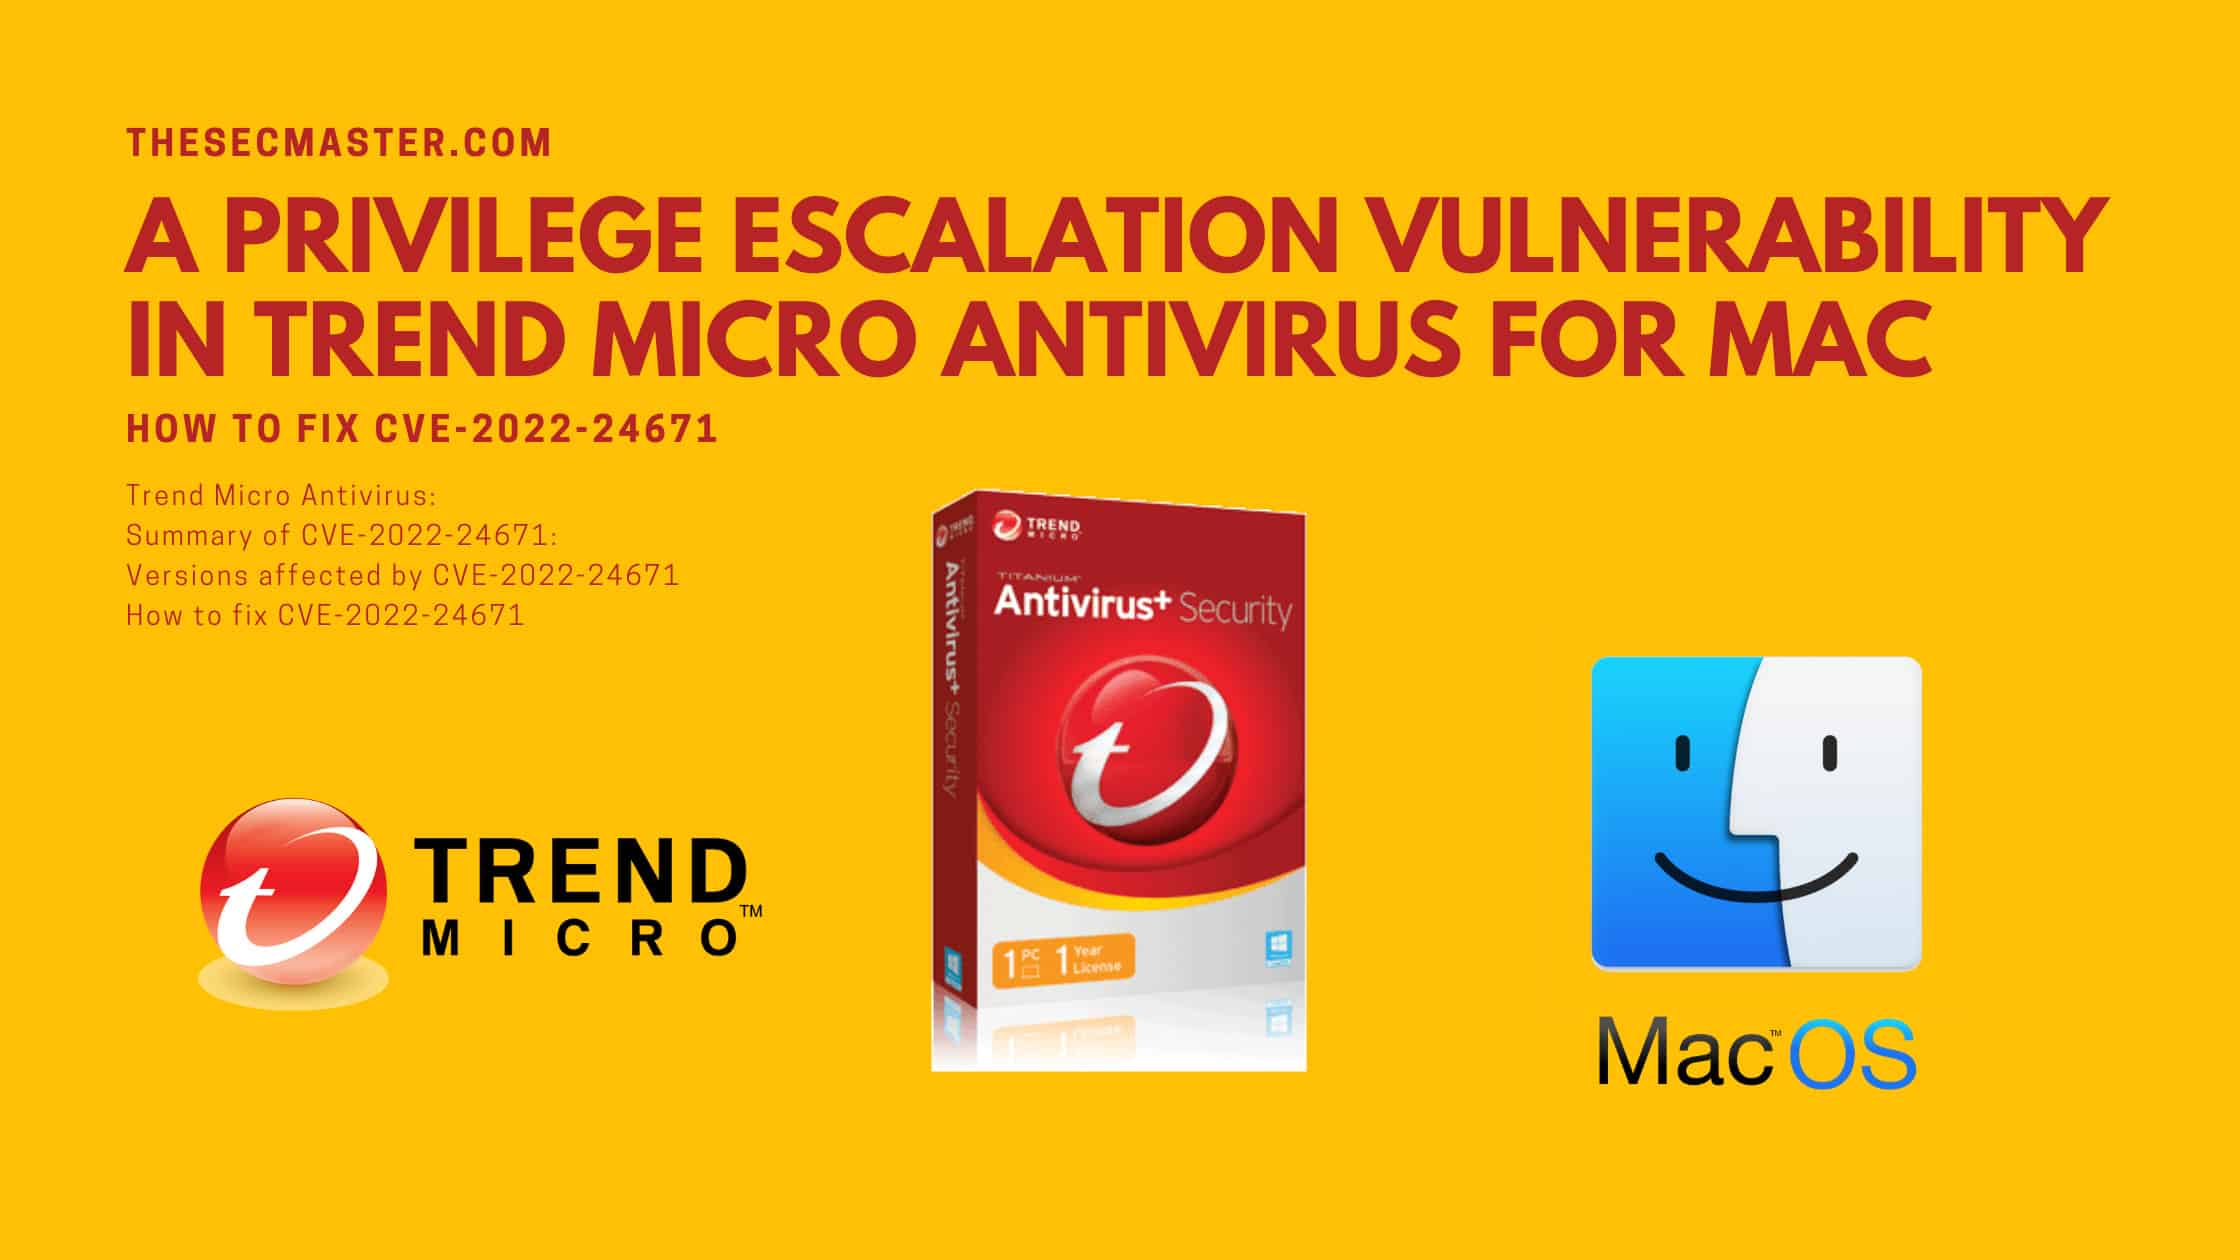 How To Fix Cve 2022 24671 A Privilege Escalation Vulnerability In Trend Micro Antivirus